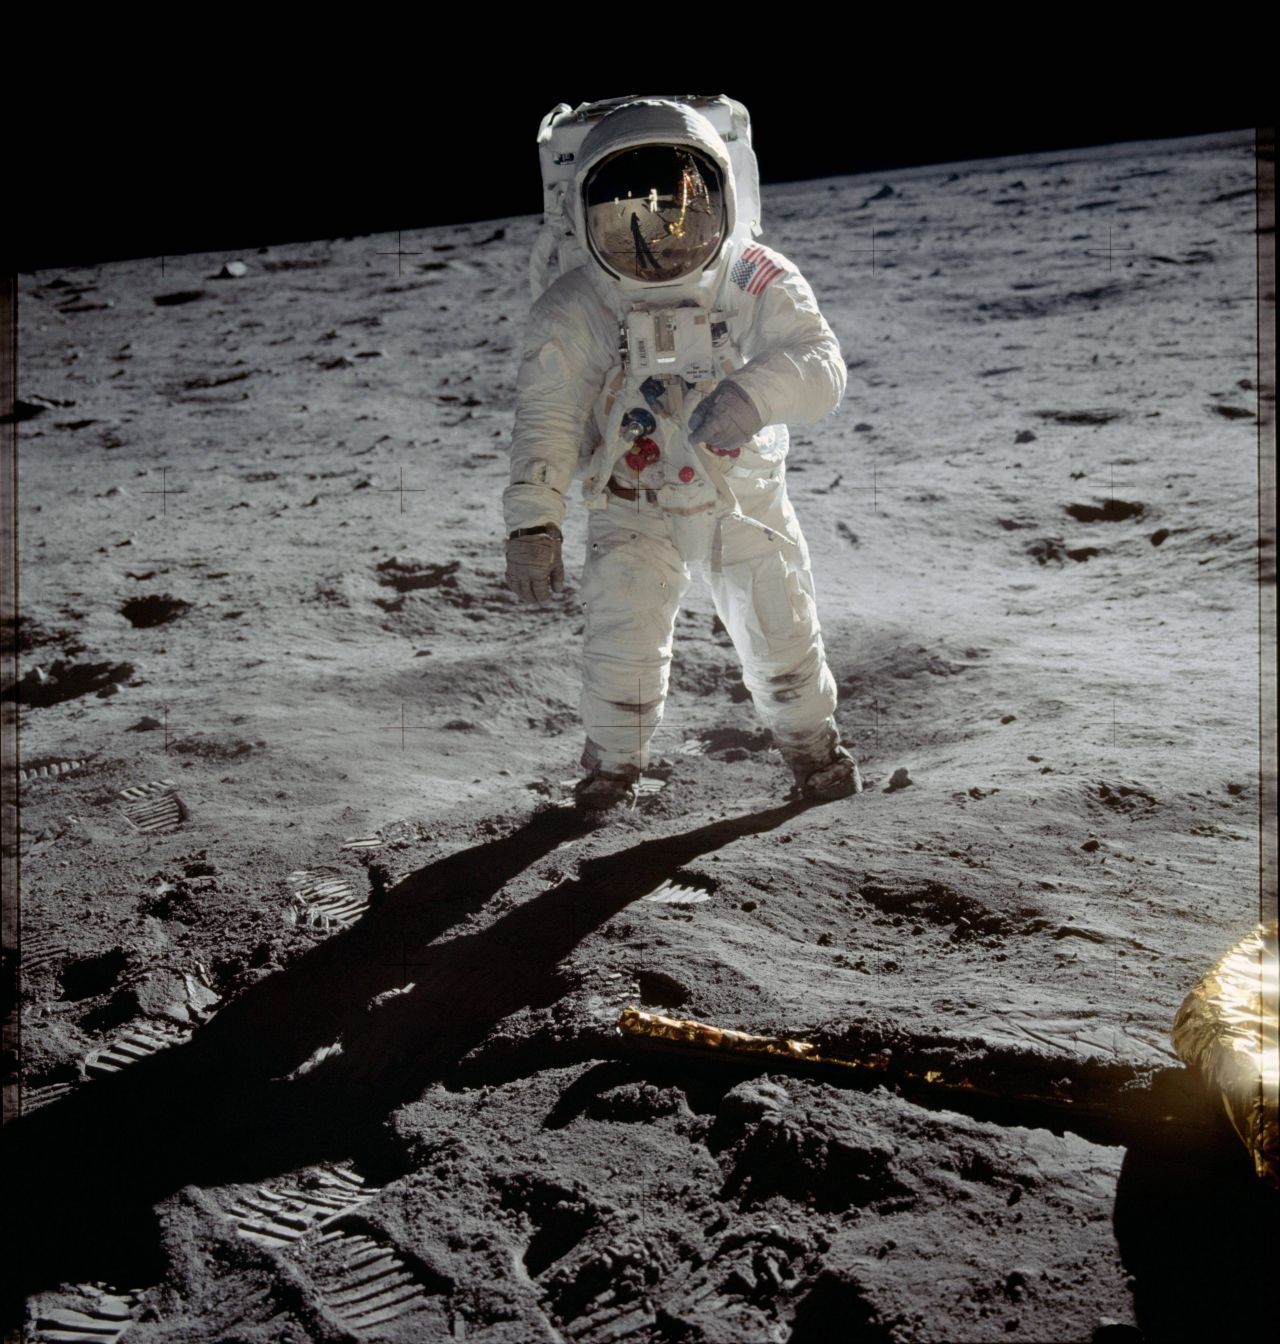 Buzz Aldrin auf dem Mond, fotografiert von Neil Armstrong. Im Helm spiegelt sich die Mondlandefähre, im Vordergrund sind Fußspuren zu sehen.